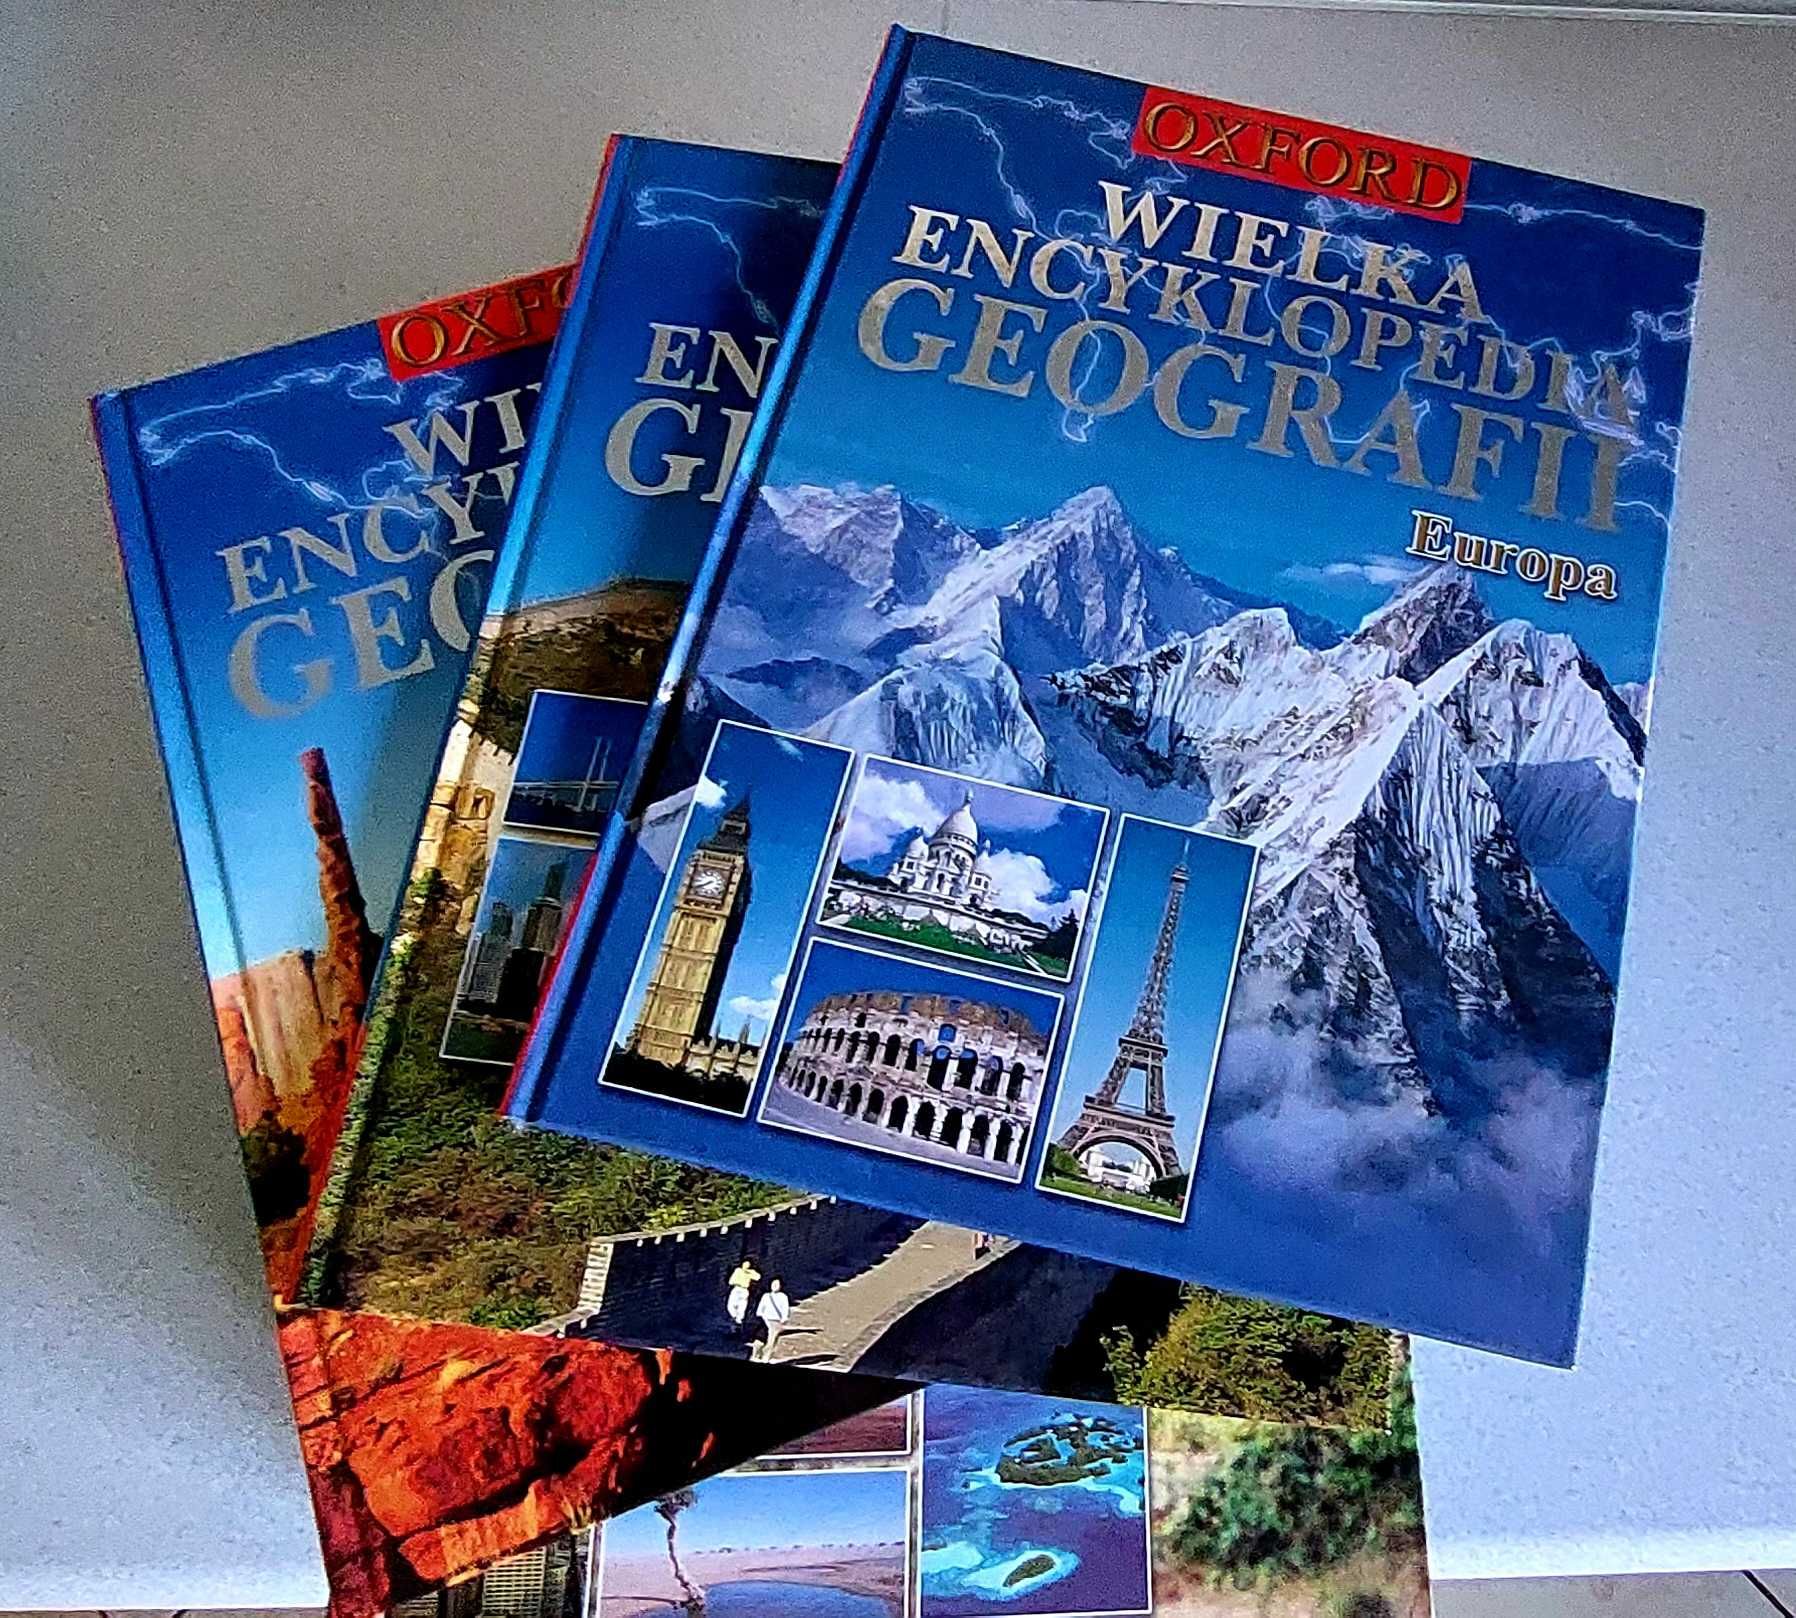 Wielka Encyklopedia Geografii